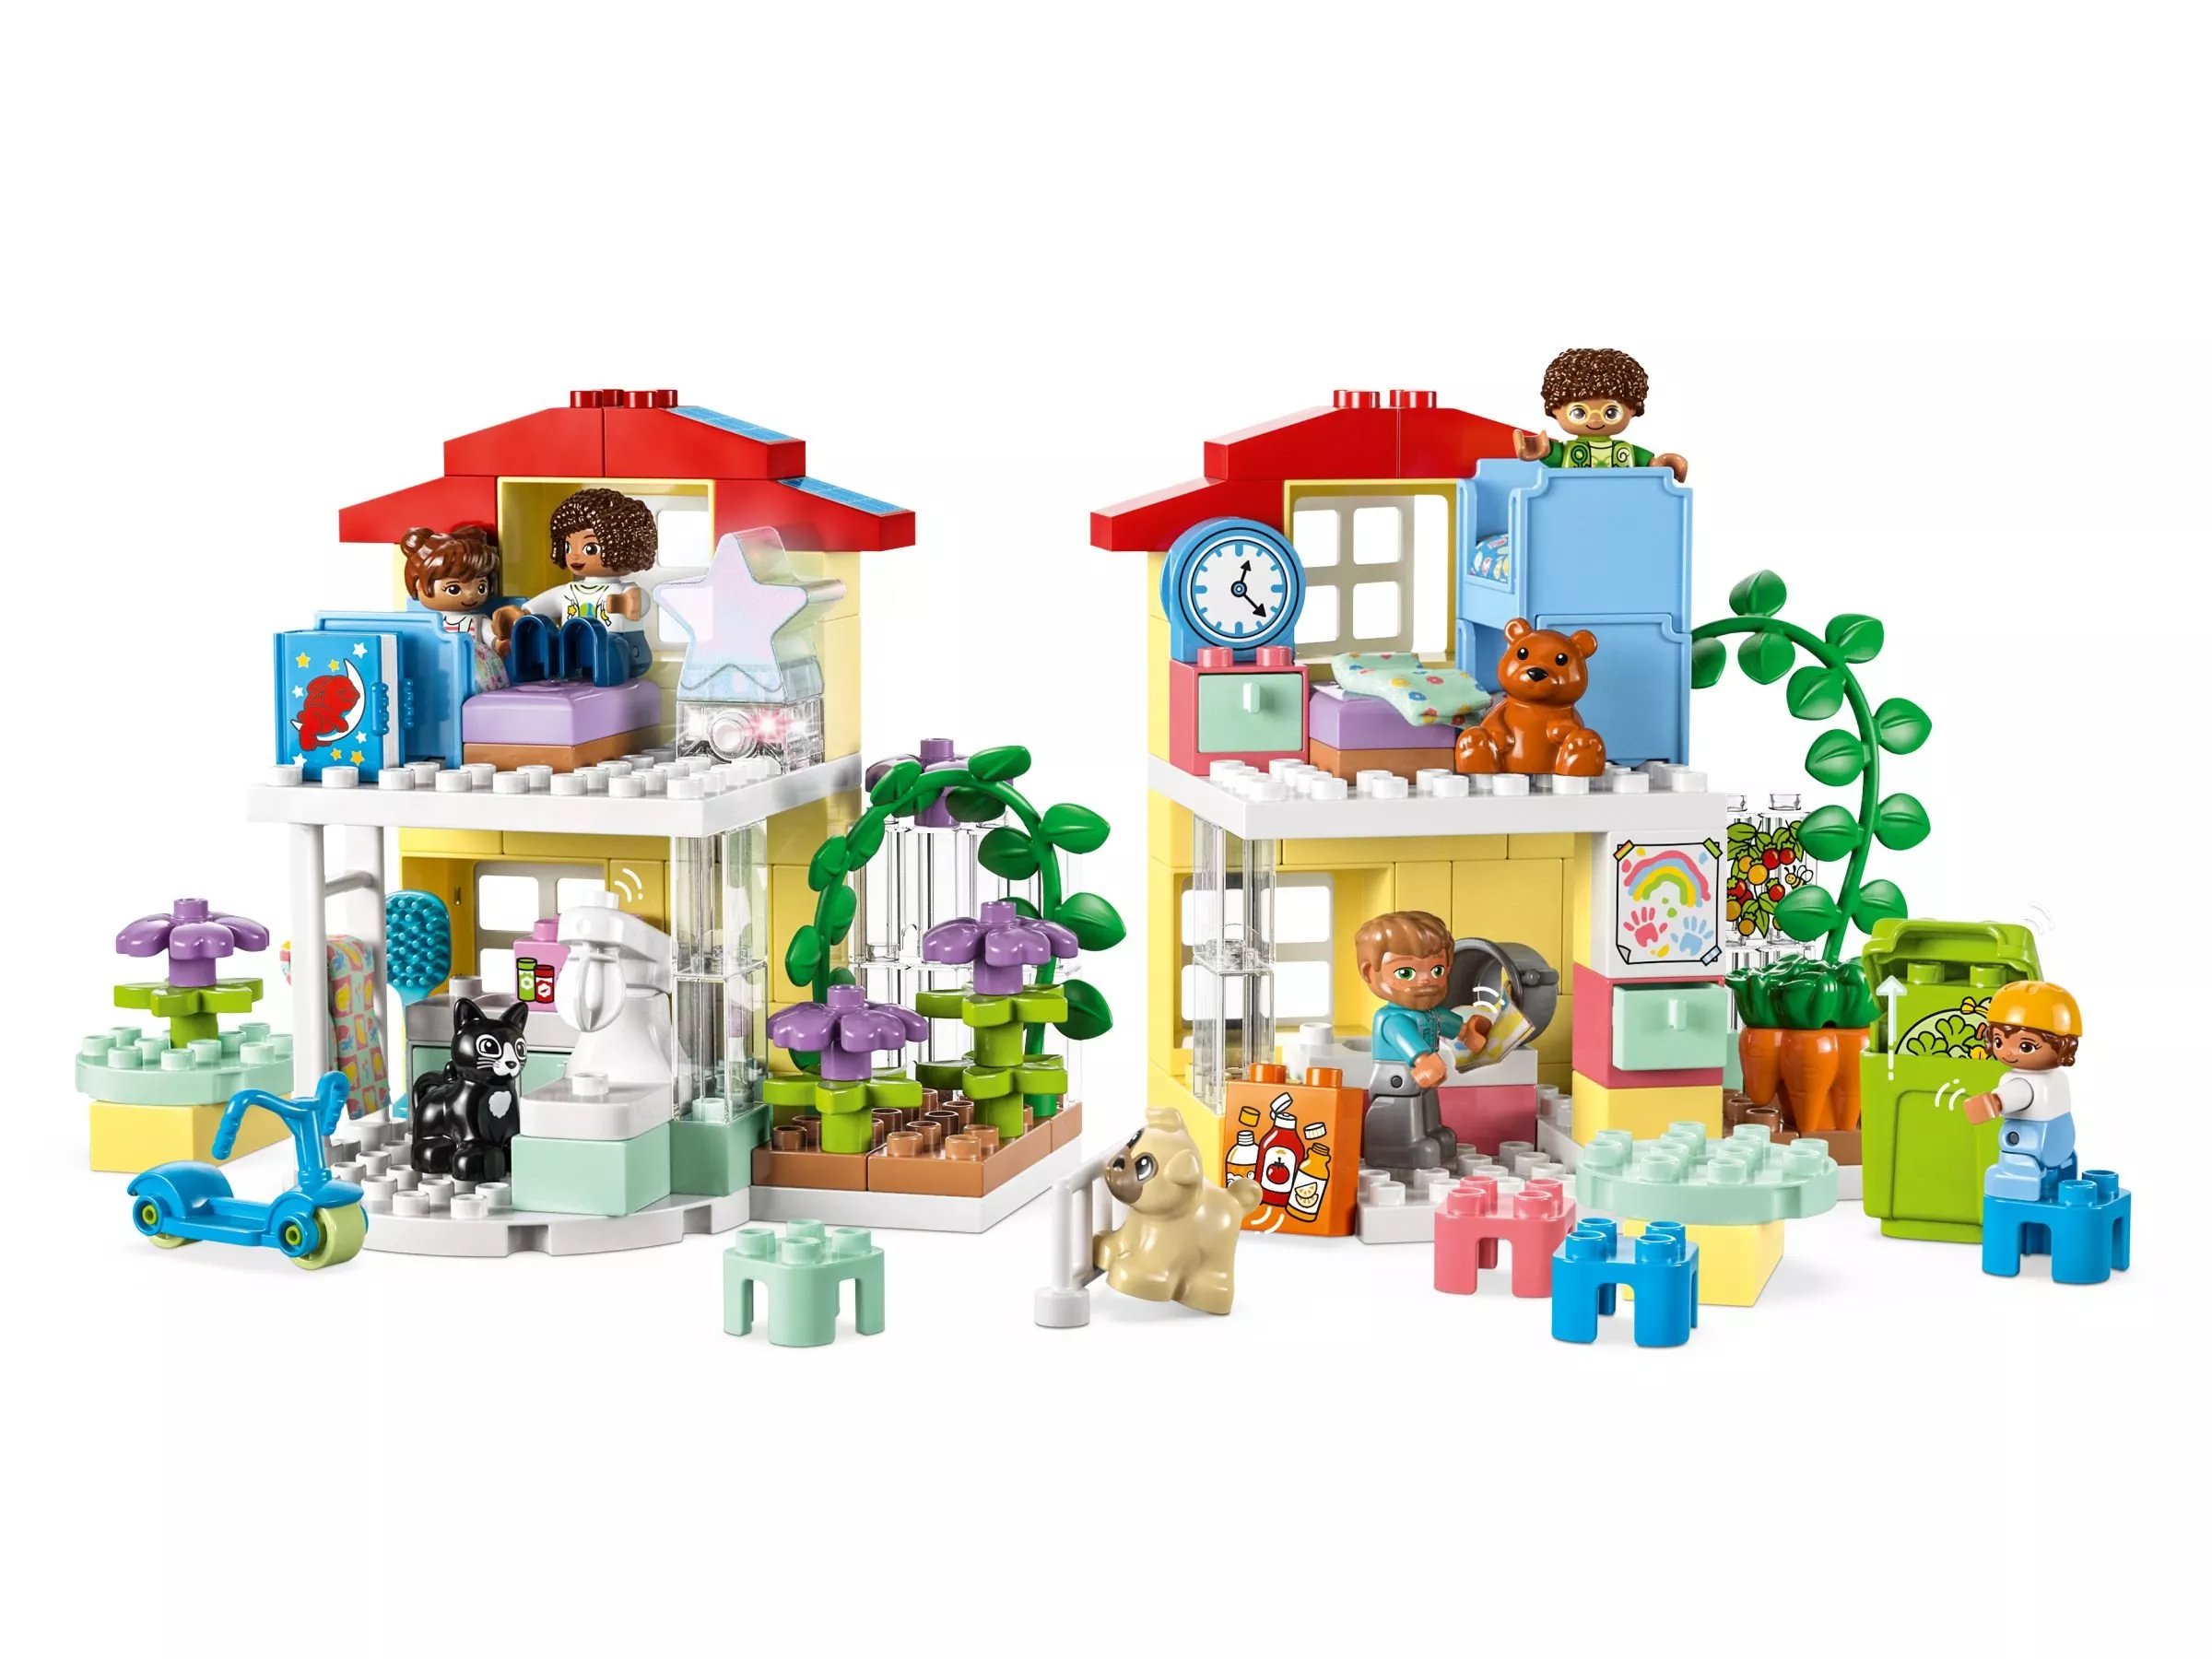 LEGO 10994 Duplo 3-in-1-Familienhaus